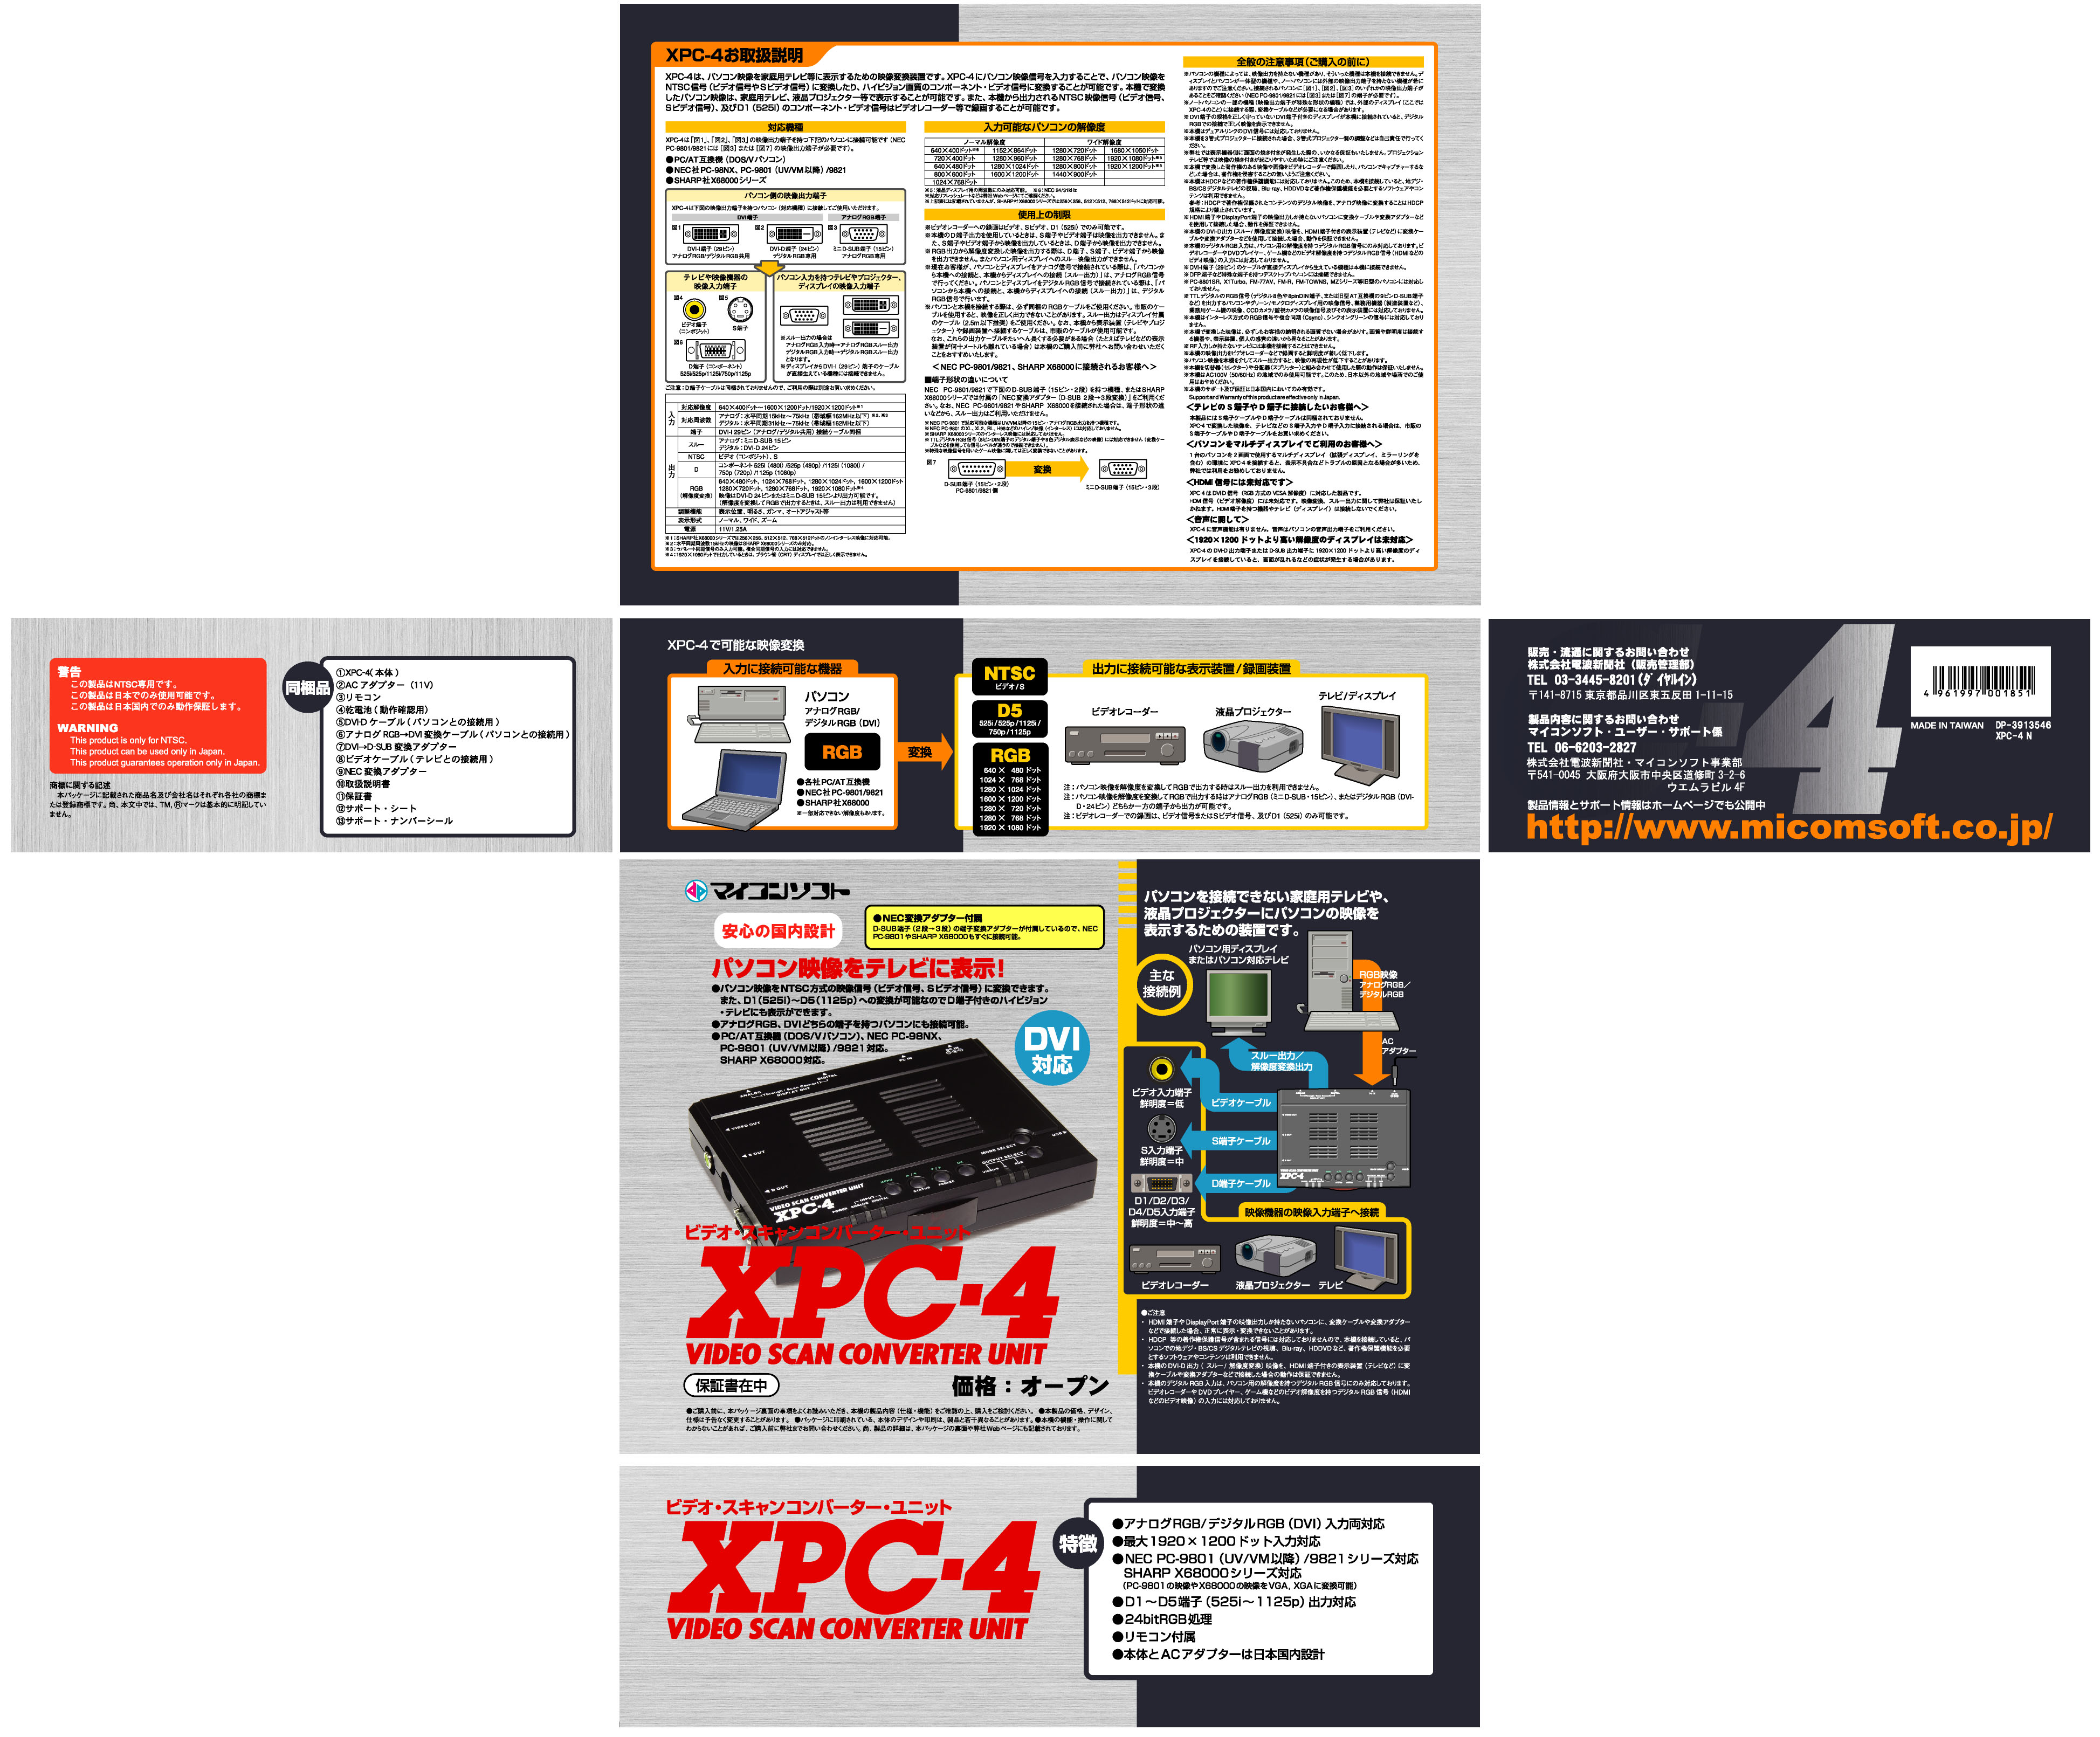 マイコンソフト「XPC-4」製品ページ